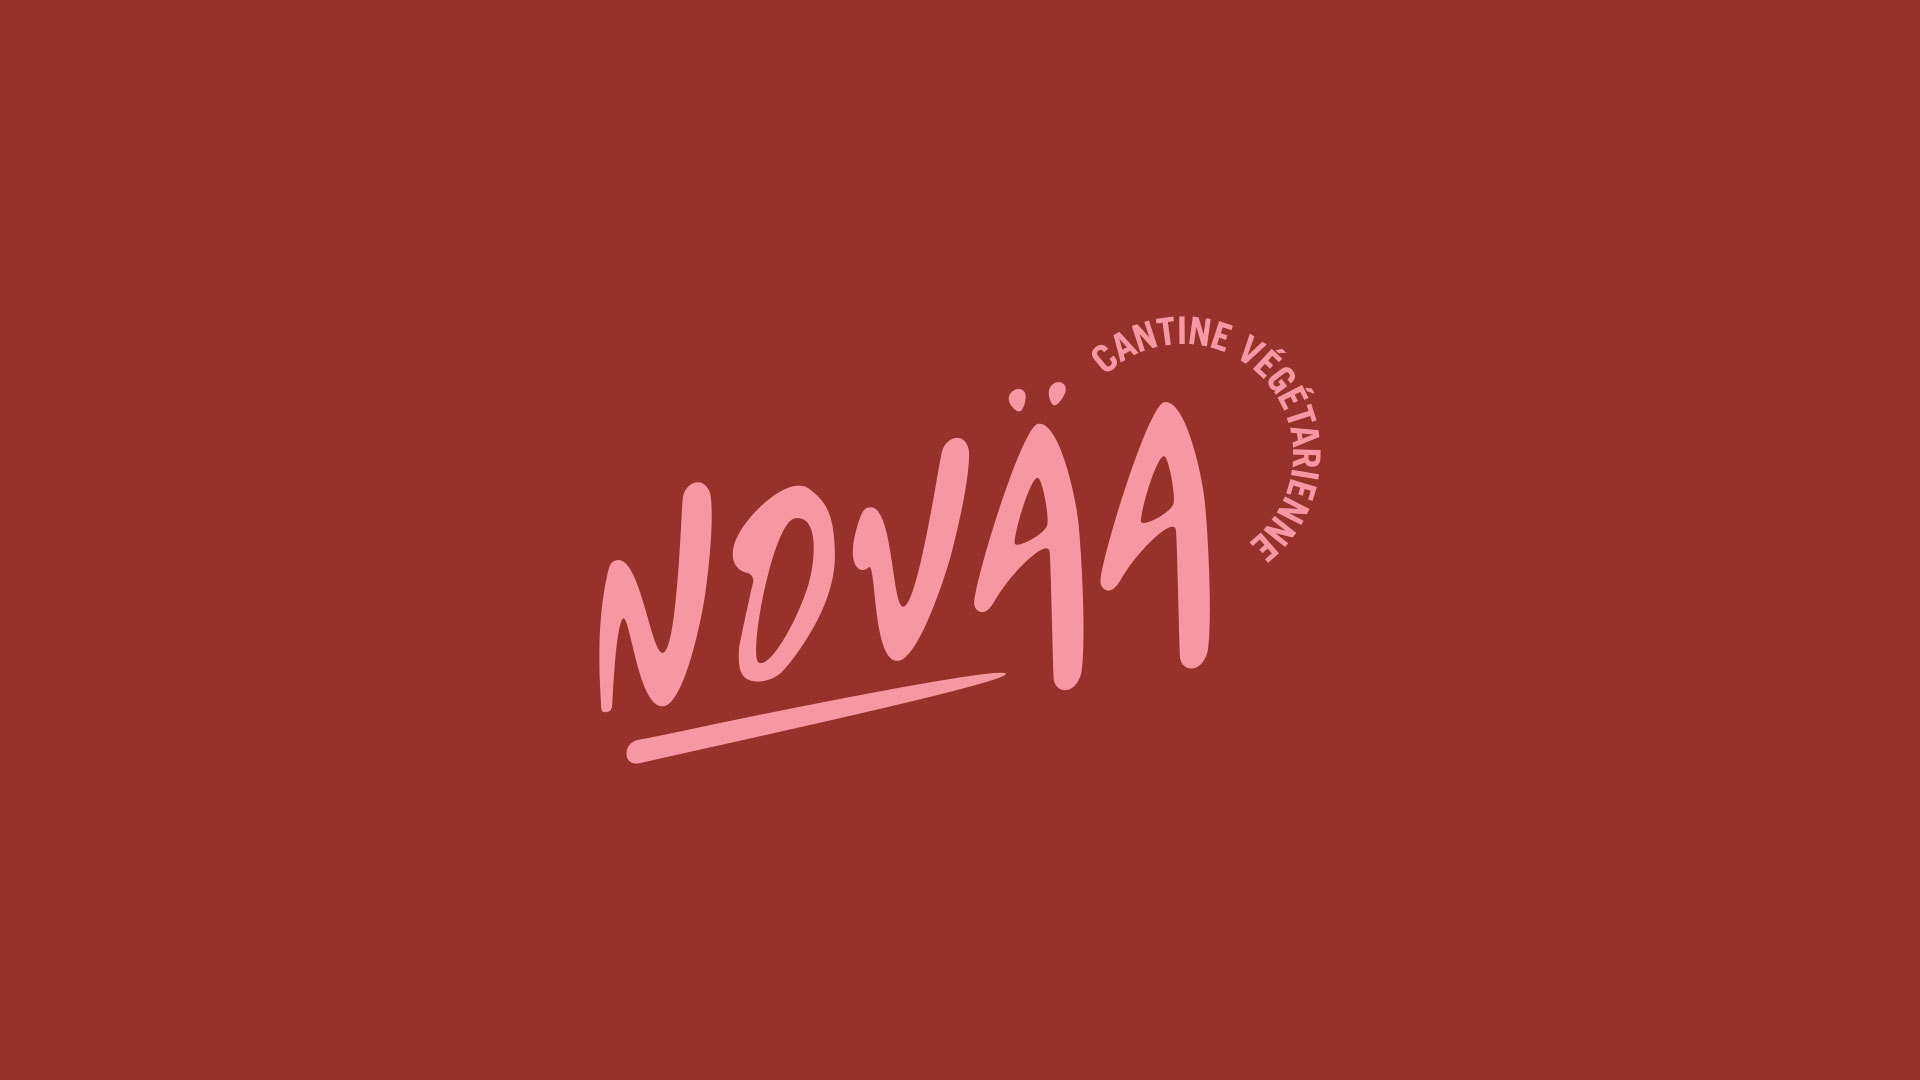 Novaa Identite Visuelle Hypersthene Logotype Bis